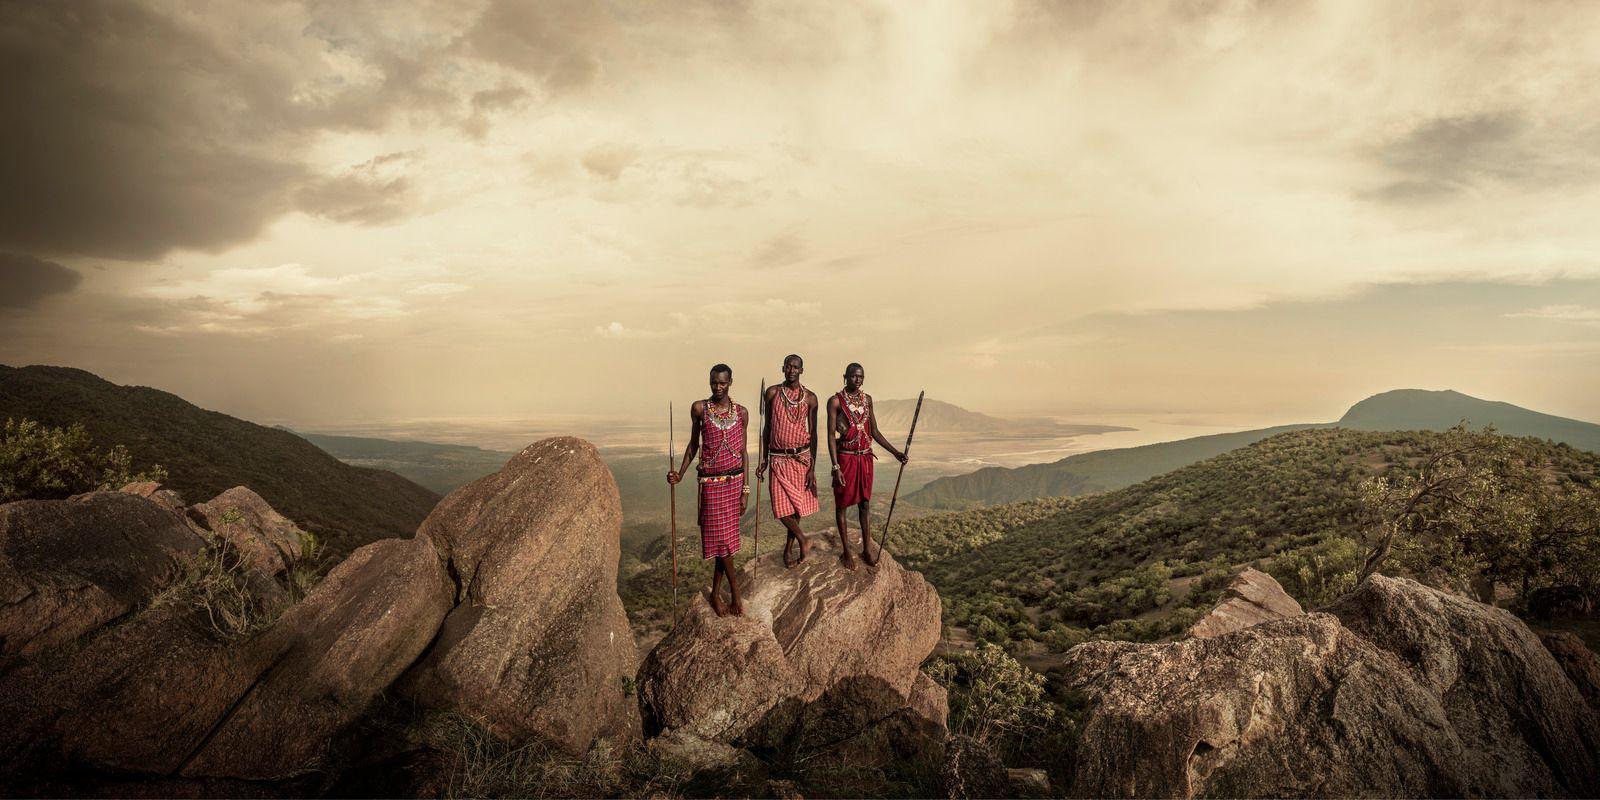 Tous les formats et éditions disponibles pour chaque format de cette photographie :
24.41" X 43.31" Edition de 9
39.37" X 70.87" Edition de 6
55.12" X 102.36" Edition de 3

Maasai, escarpement de Nguruman, Kenya, décembre 2017

Lorsque les Masaïs